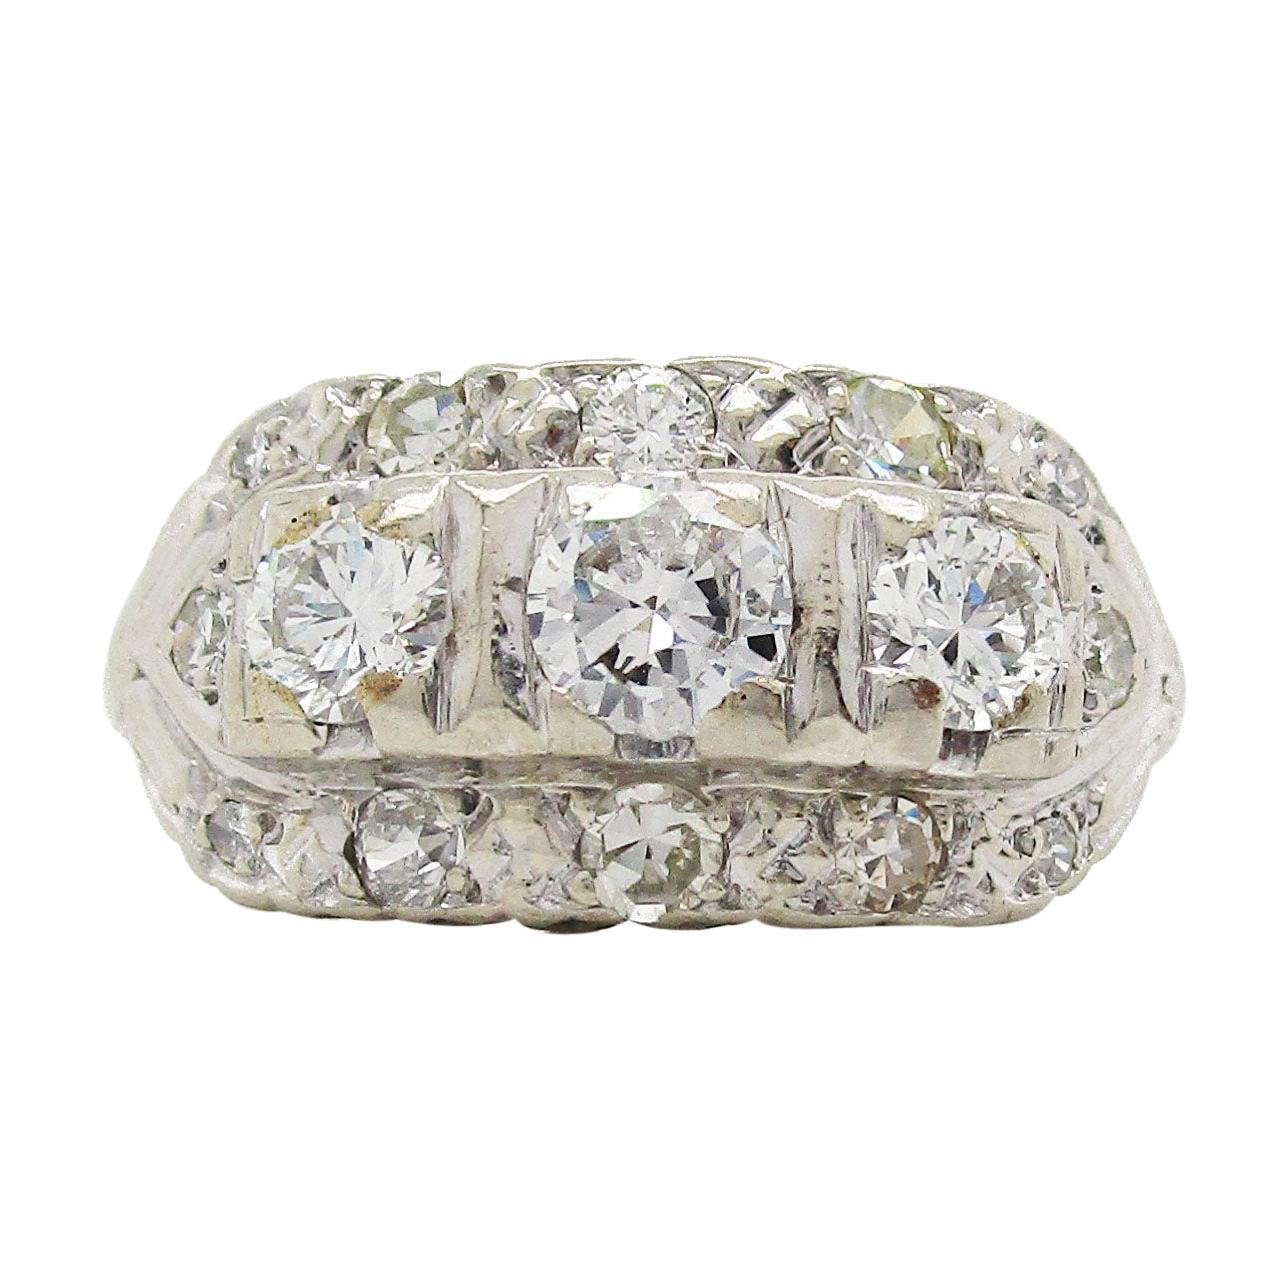 1940s 14 Karat White Gold Diamond Ring